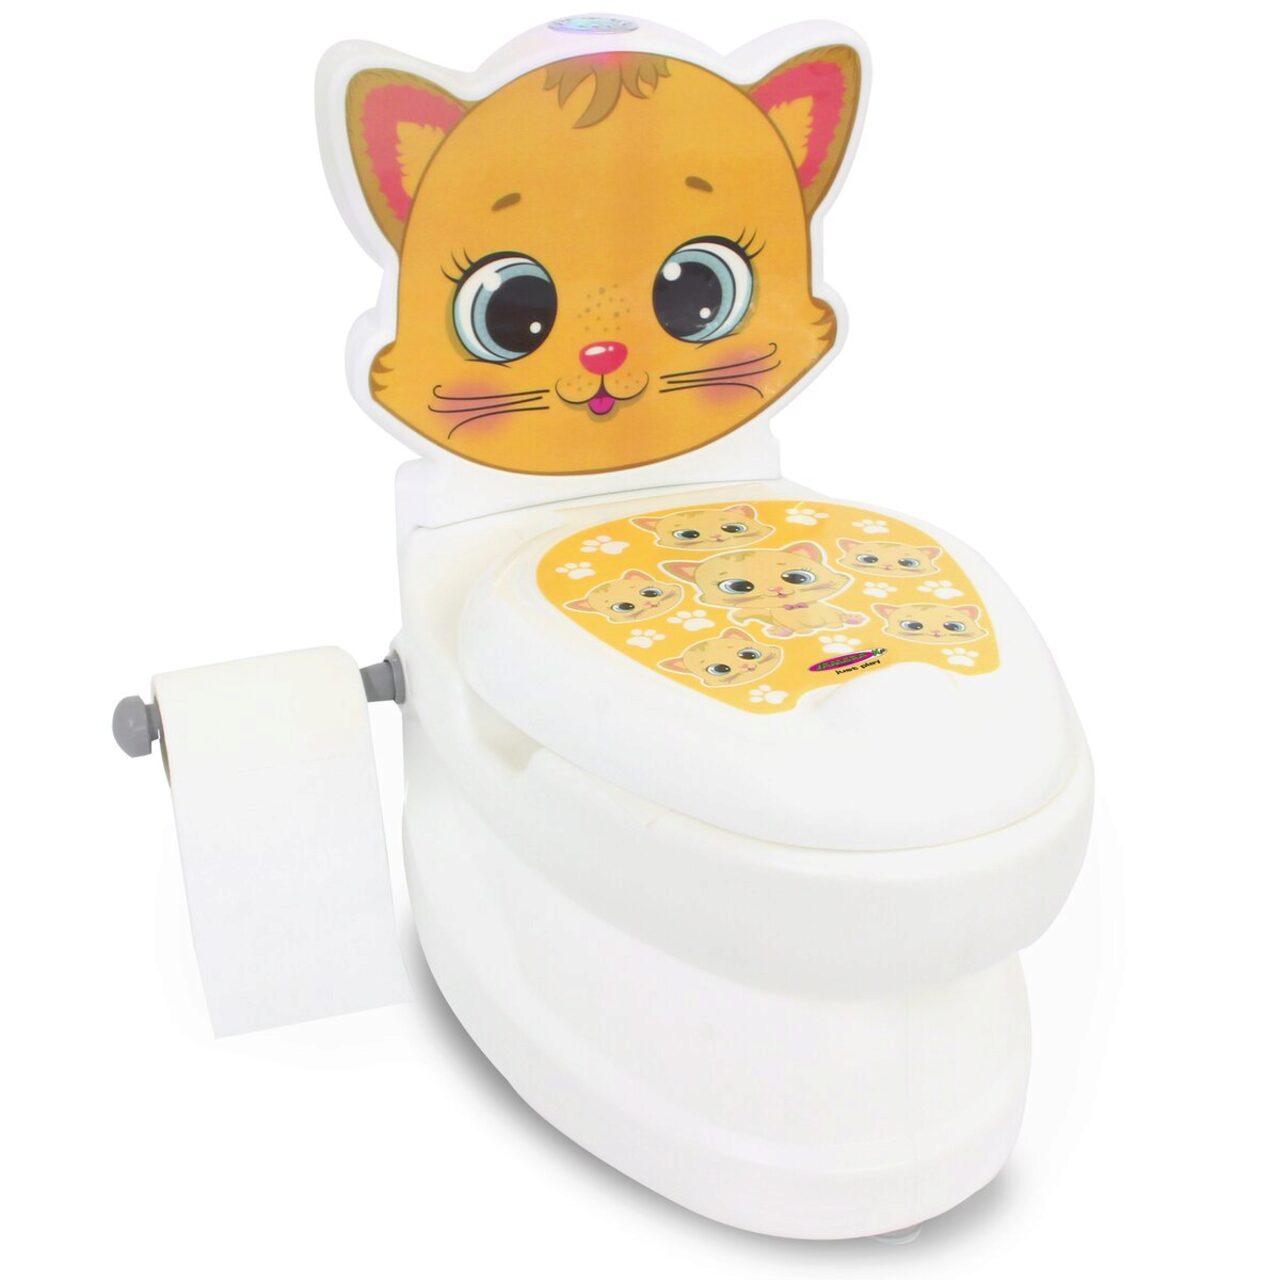 JAMARA 460955 Meine und Katze kleine Spülsound Toilette mit Toilettenpapierhalter